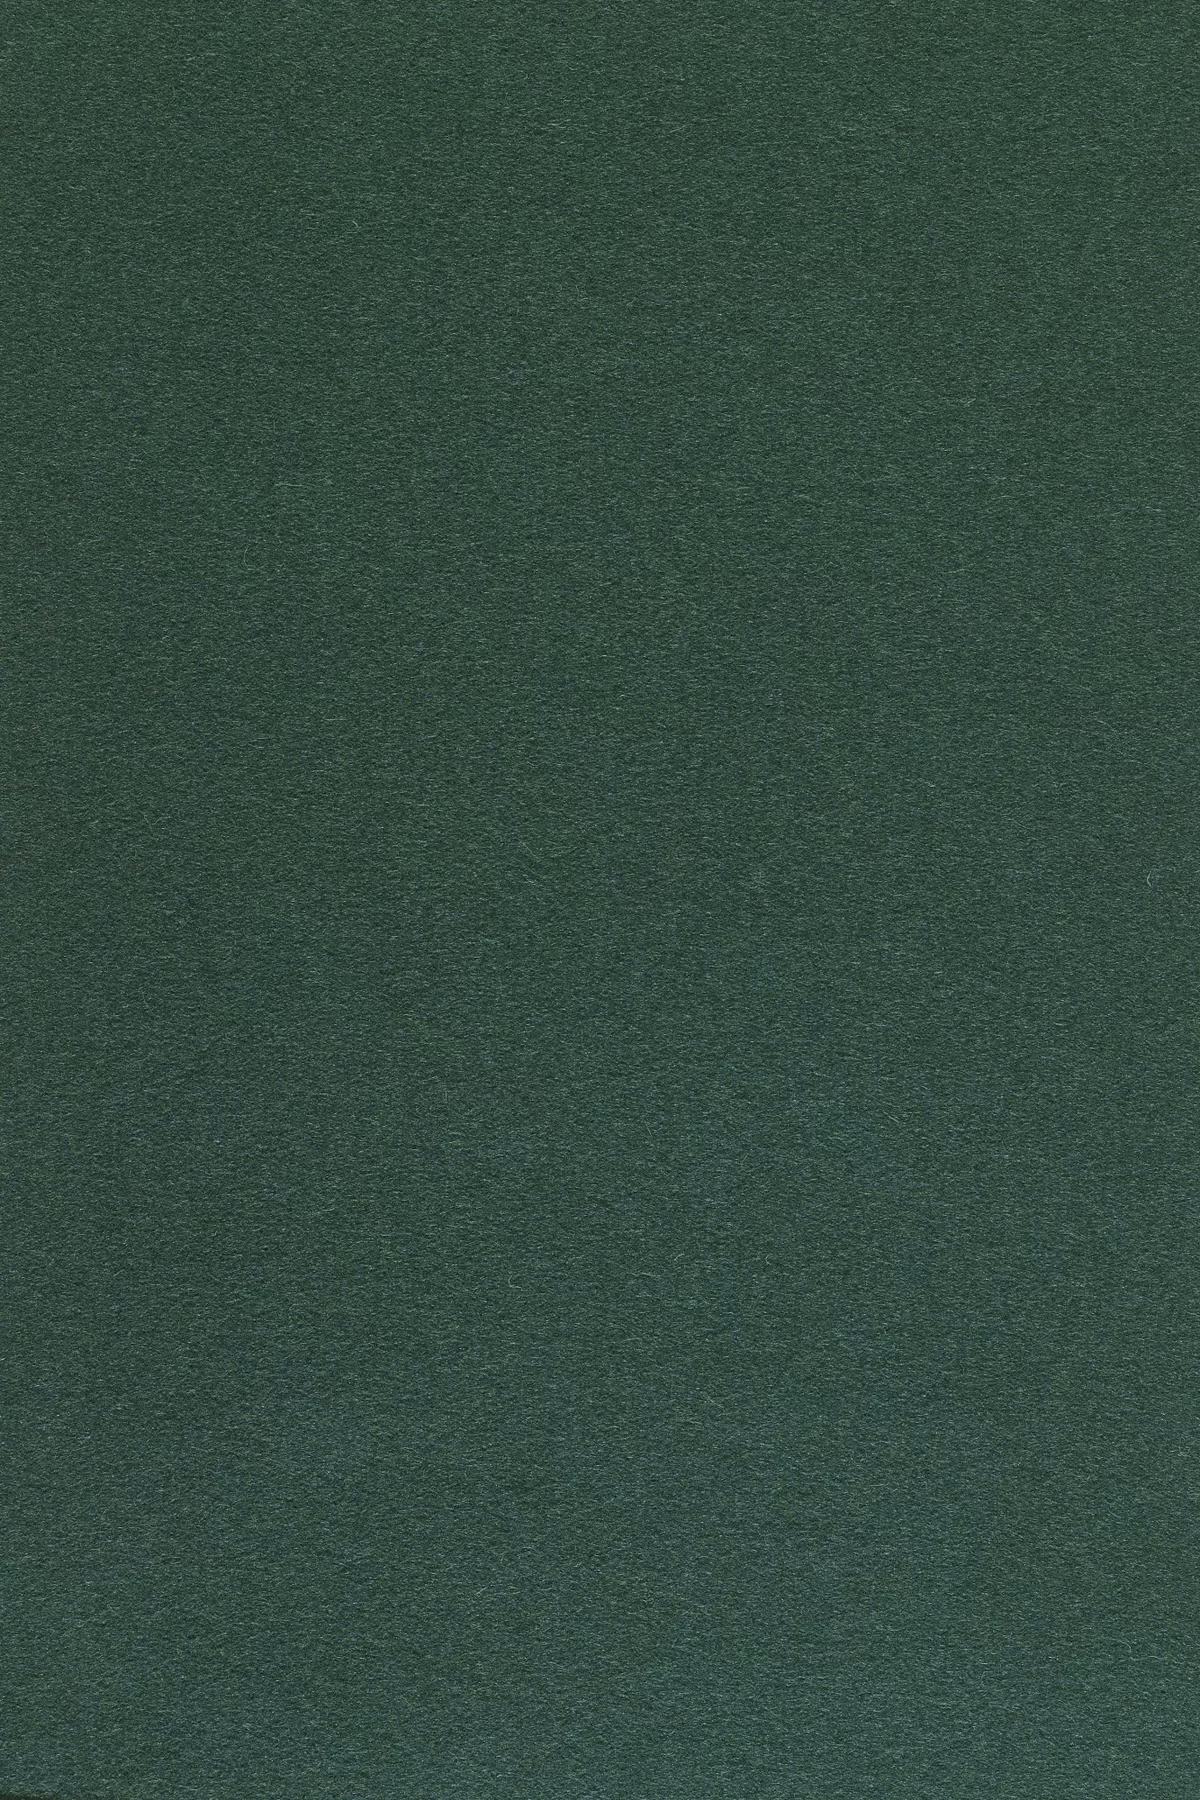 Fabric sample Divina 3 886 green